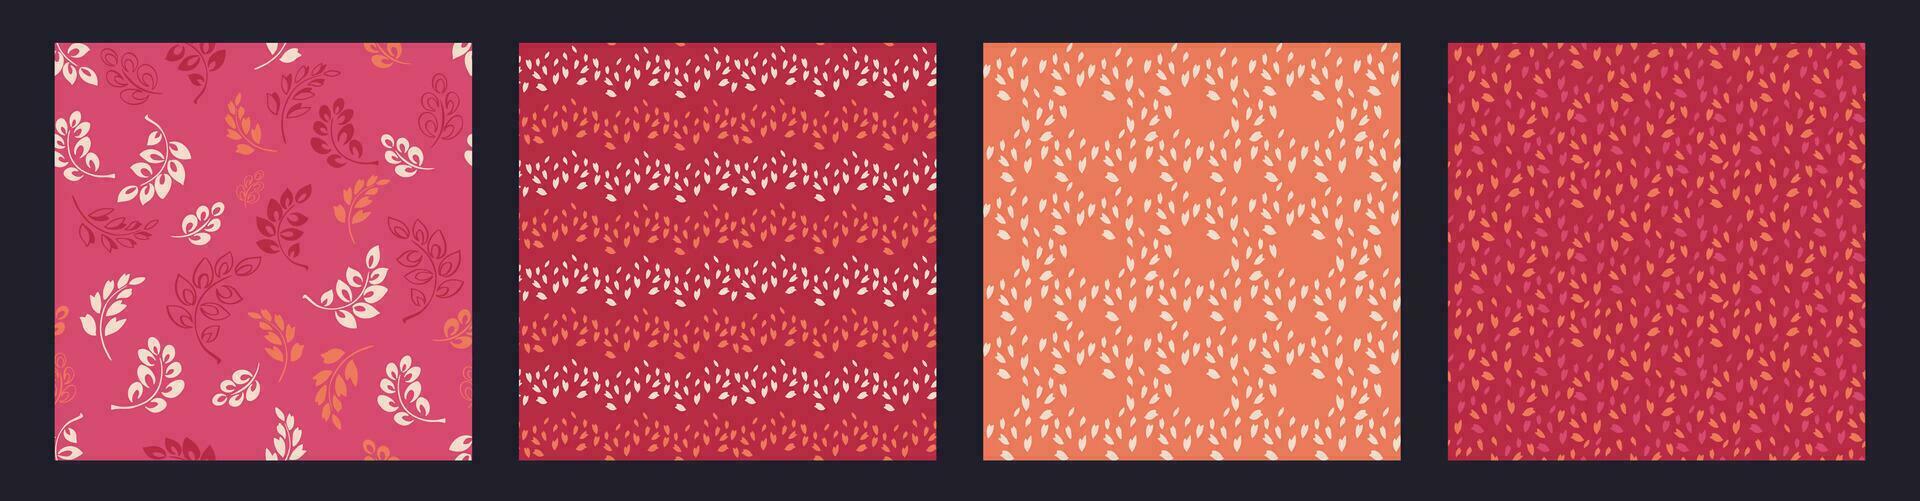 reeks van abstract plein naadloos patroon klein takken bladeren, druppels, ruit, willekeurig stippen. modieus vector hand- getrokken schetsen gemakkelijk achtergrond texturen roze, bordeaux, oranje. ontwerp voor kleding stof, mode